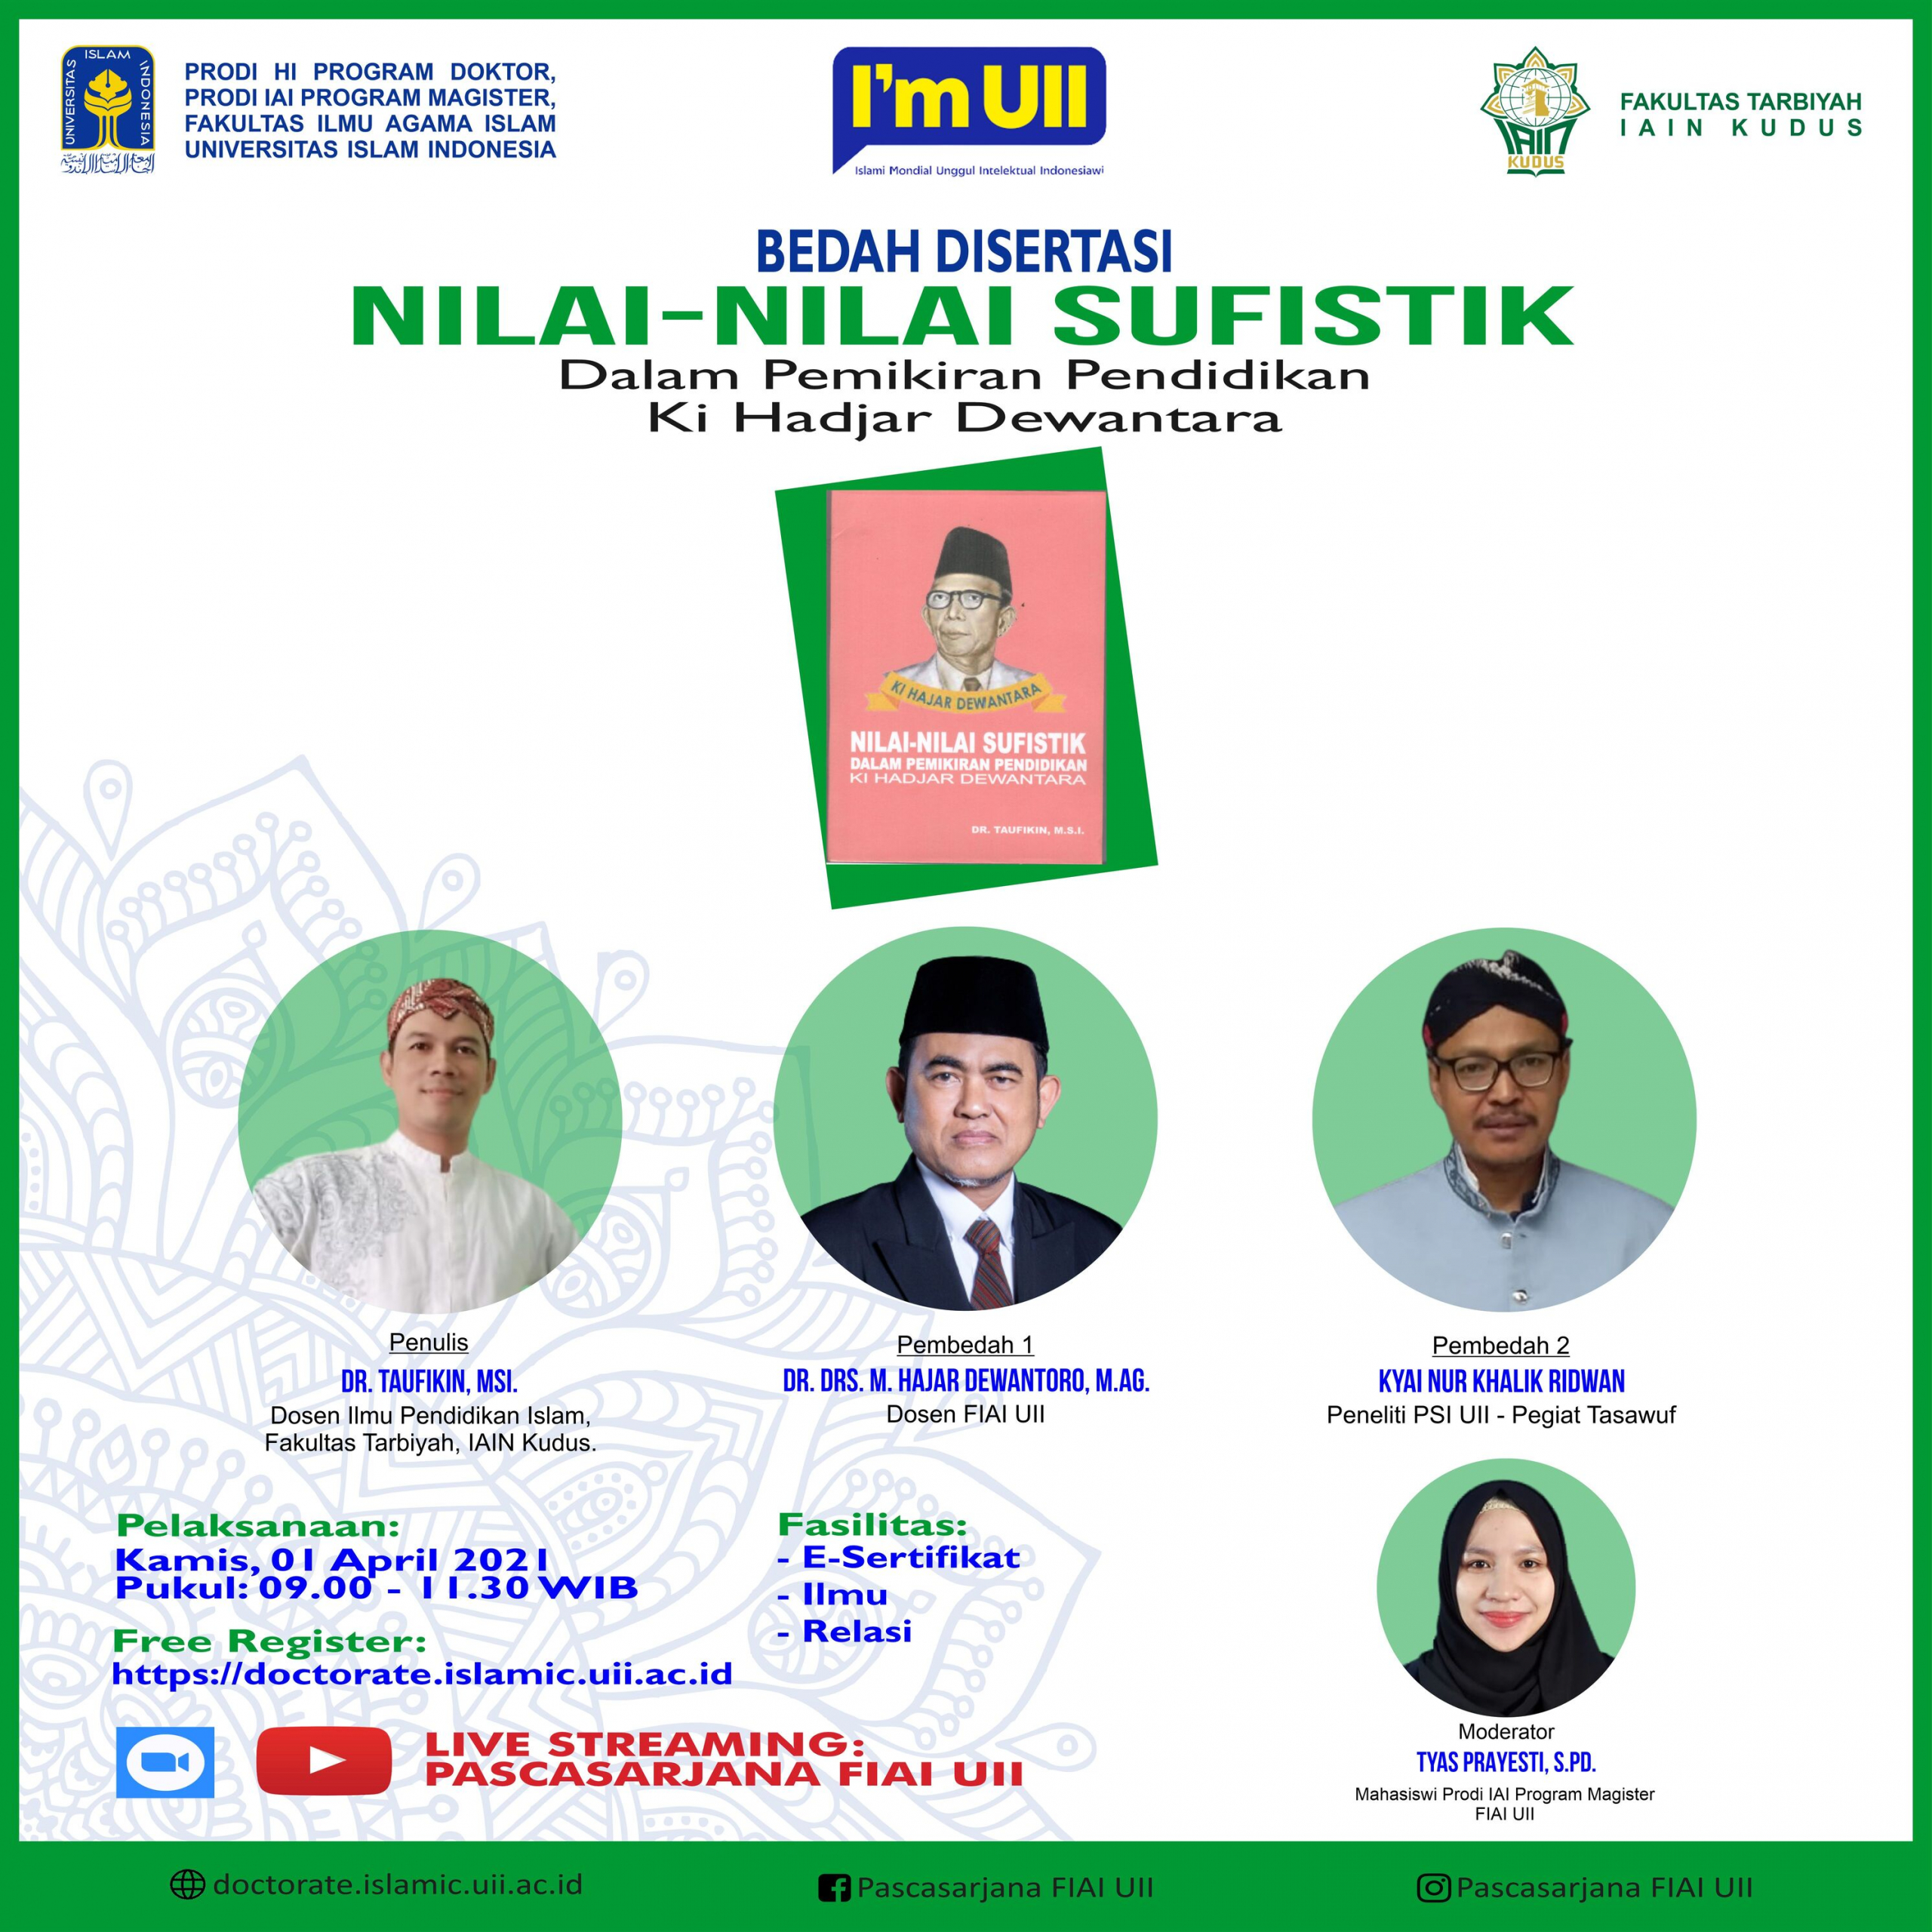 IKHTIAR KESEMBUHAN SESUAI AJARAN ISLAM - Fakultas Kedokteran Universitas  Islam Indonesia Yogyakarta